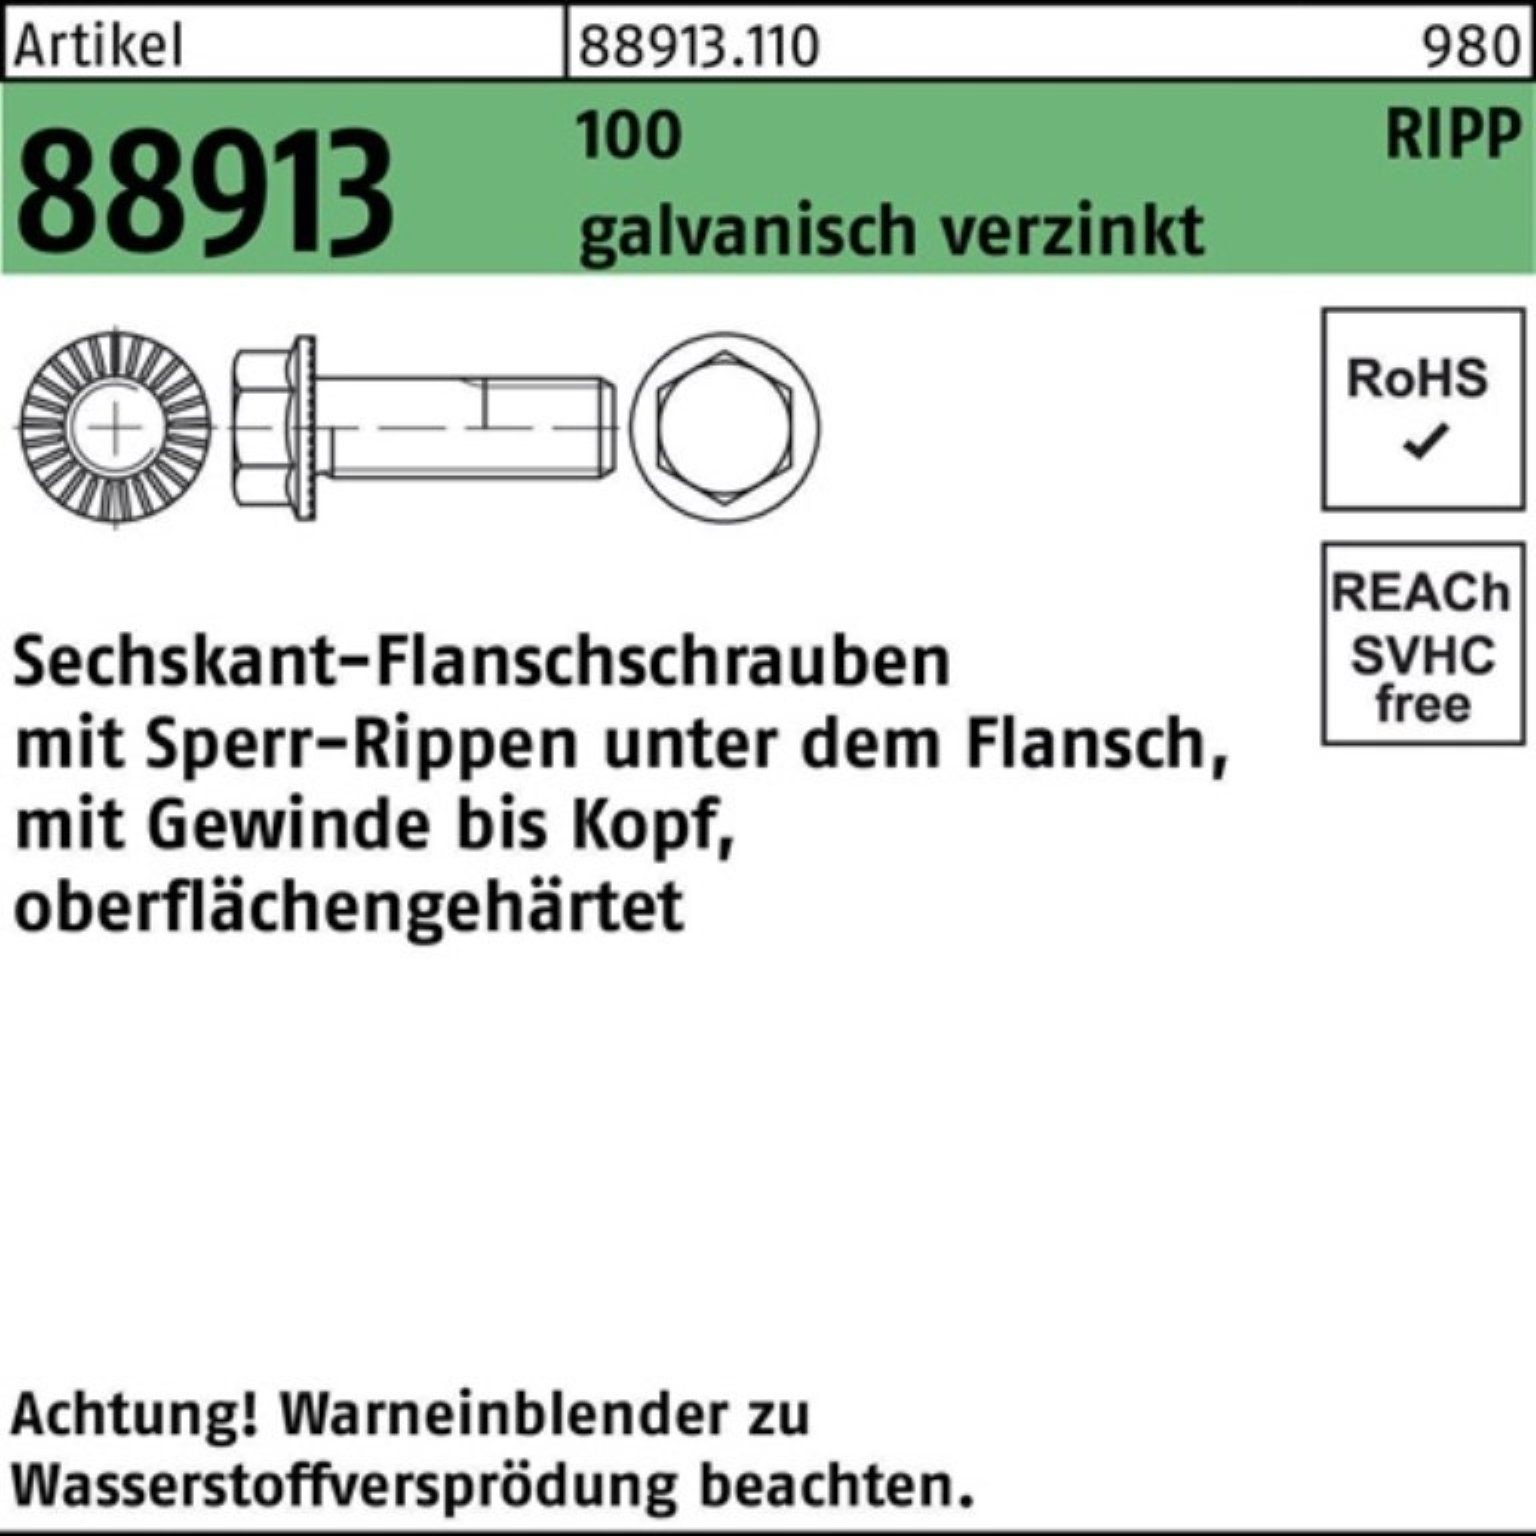 Reyher Pack Schraube R M8x30 Sechskantflanschschraube Sperr-Ripp 200er 88913 100 ga VG